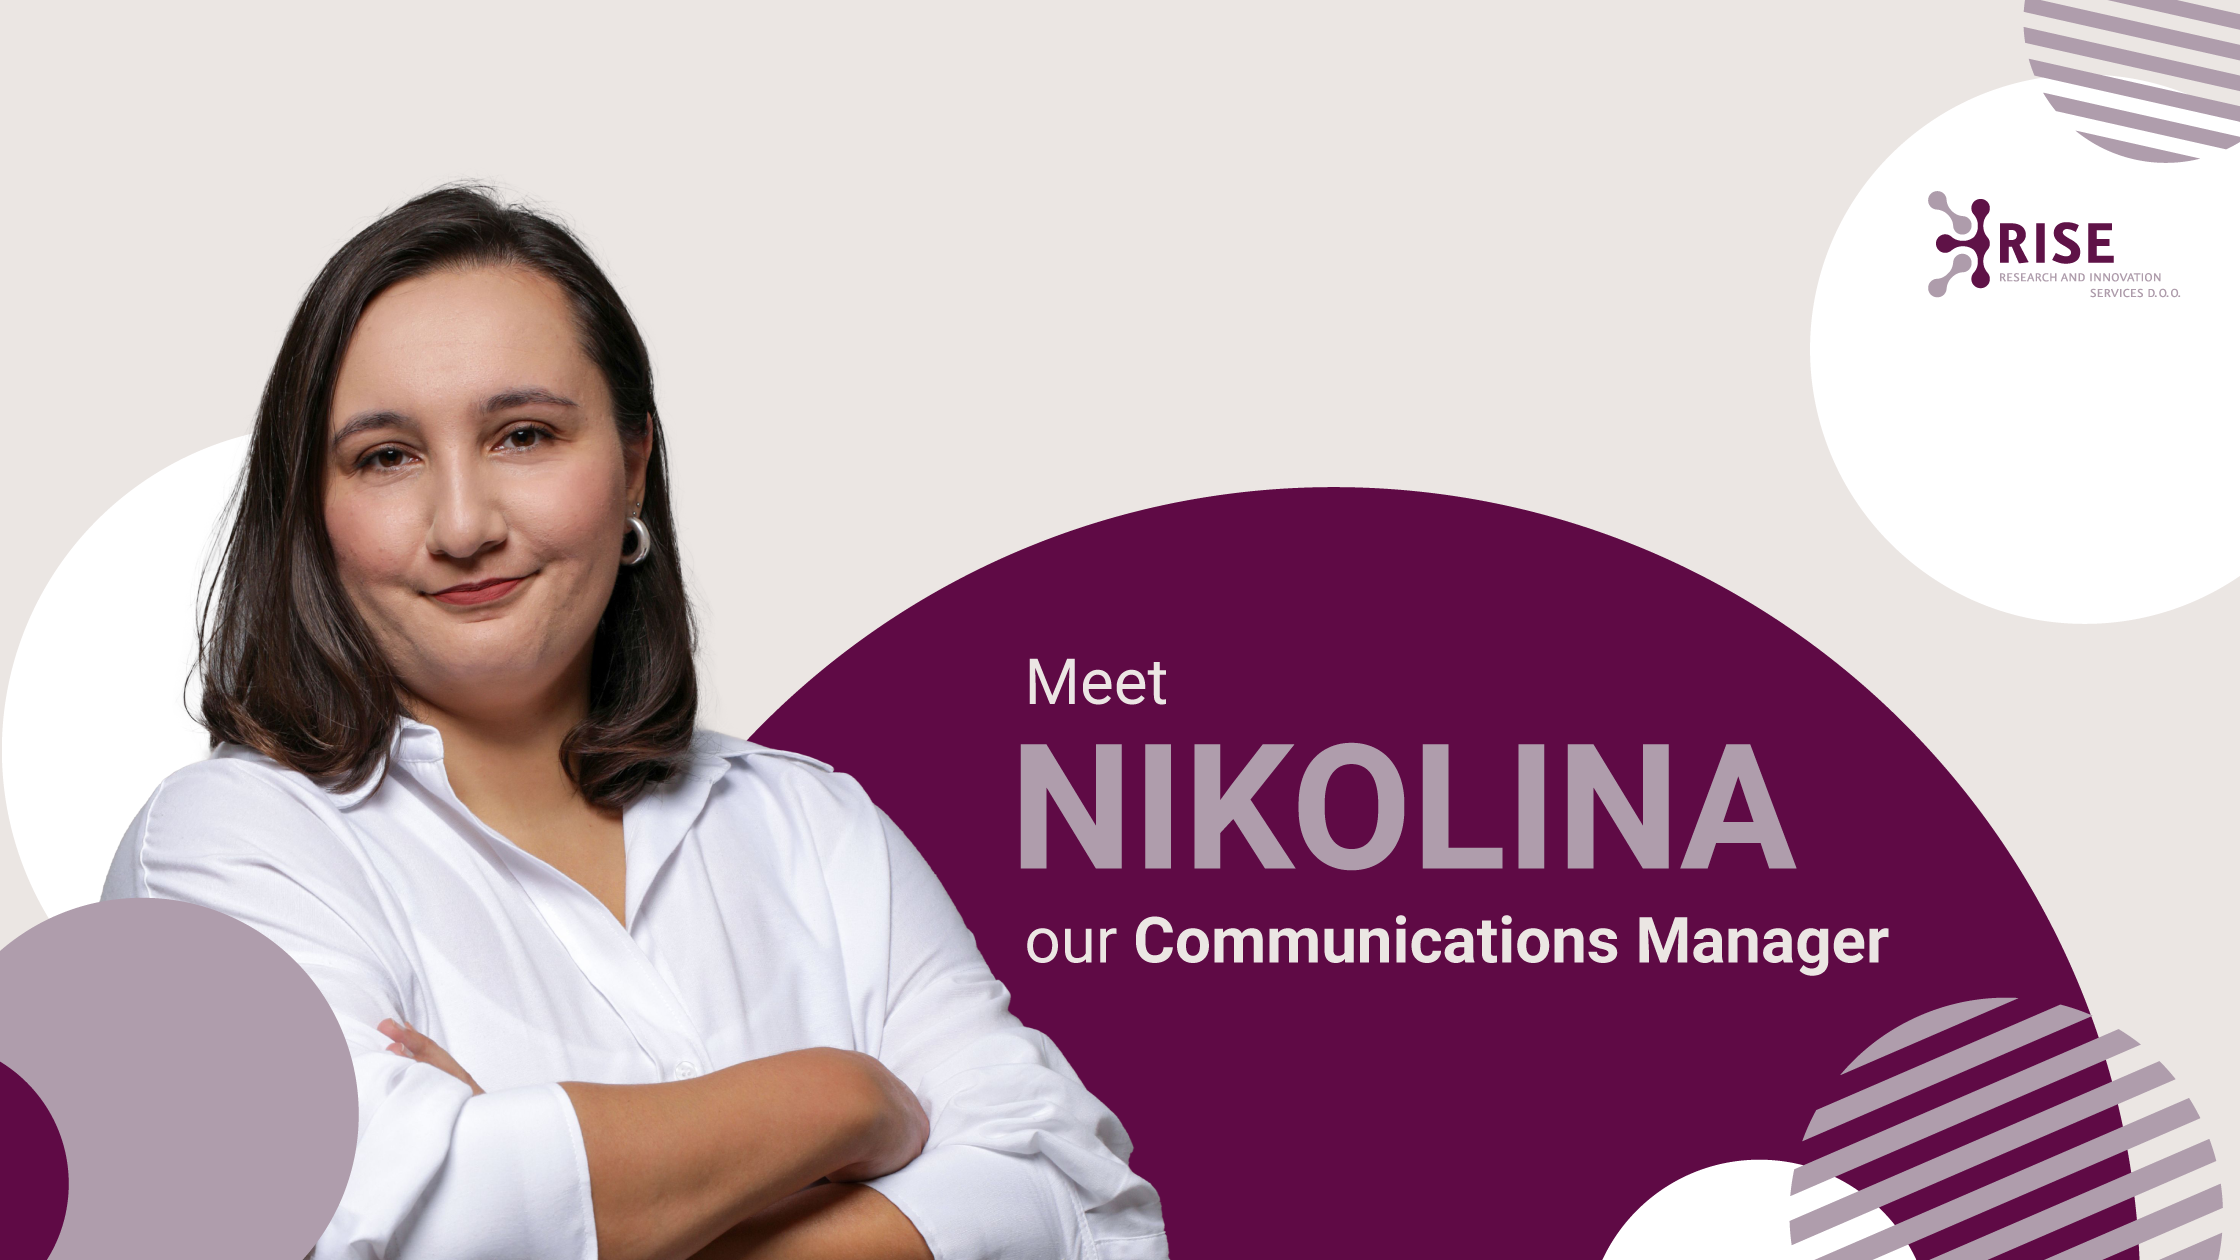 Nikolina_Communications-Manager-RISE